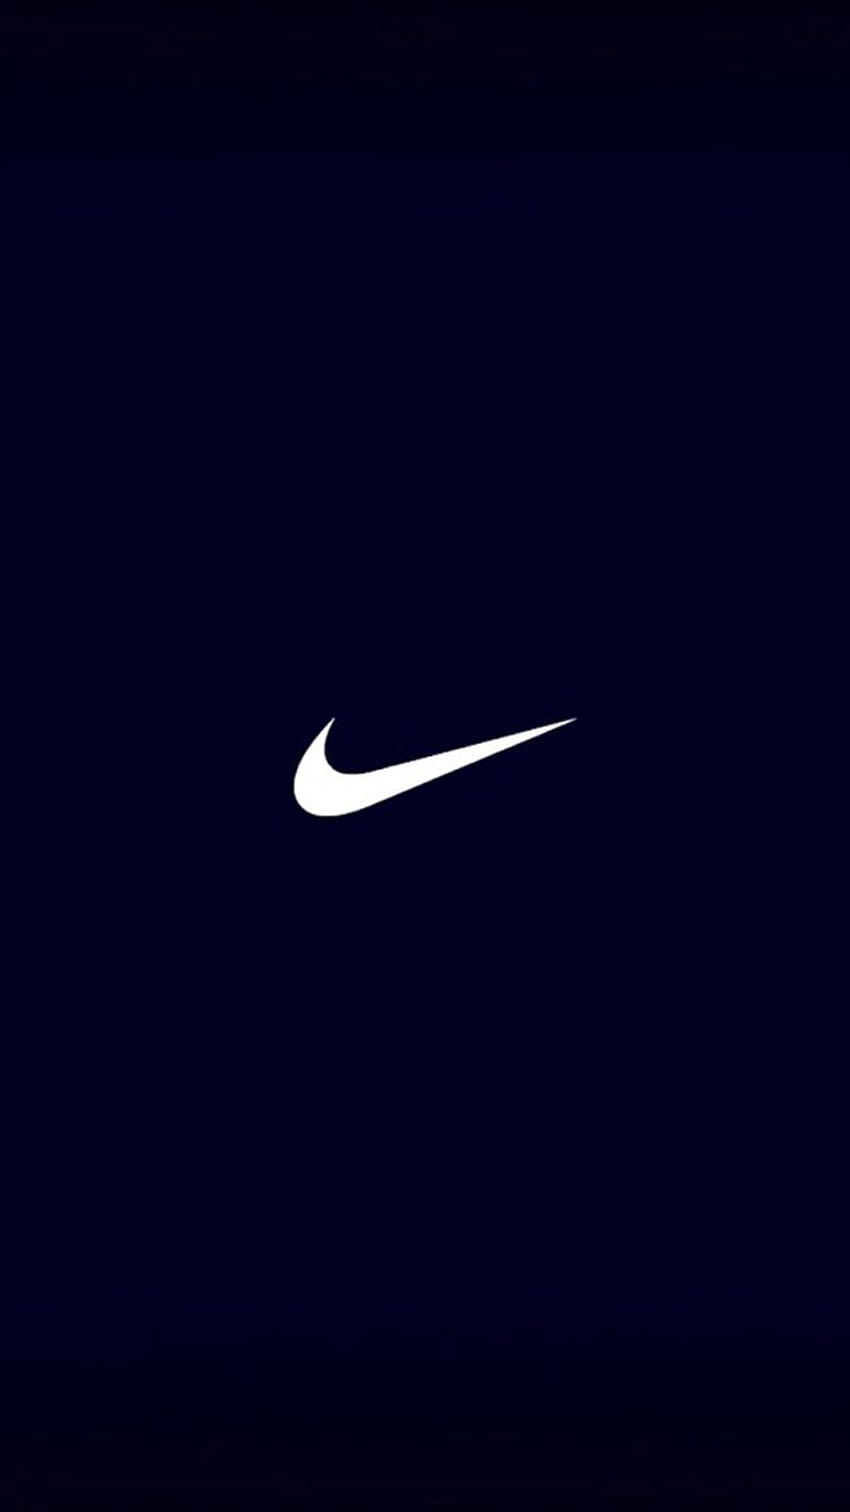 201 Hình nền Nike Full HD sắc nét chất lượng cho điện thoại và máy tính